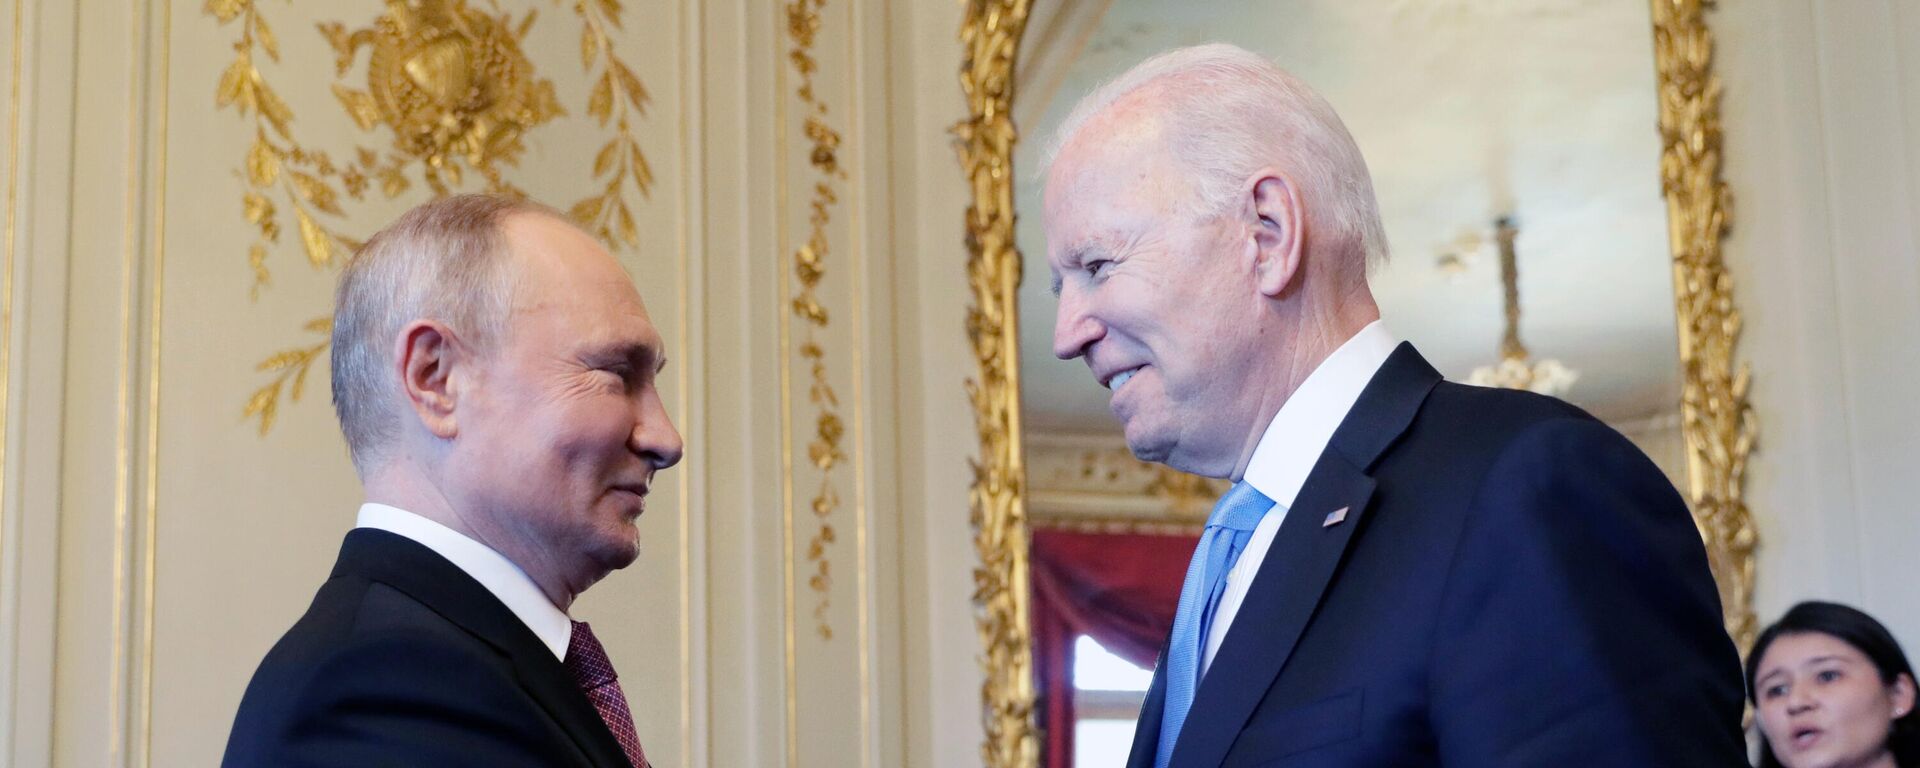 Vladímir Putin, presidente de Rusia, y Joe Biden, presidente de EEUU - Sputnik Mundo, 1920, 03.12.2021